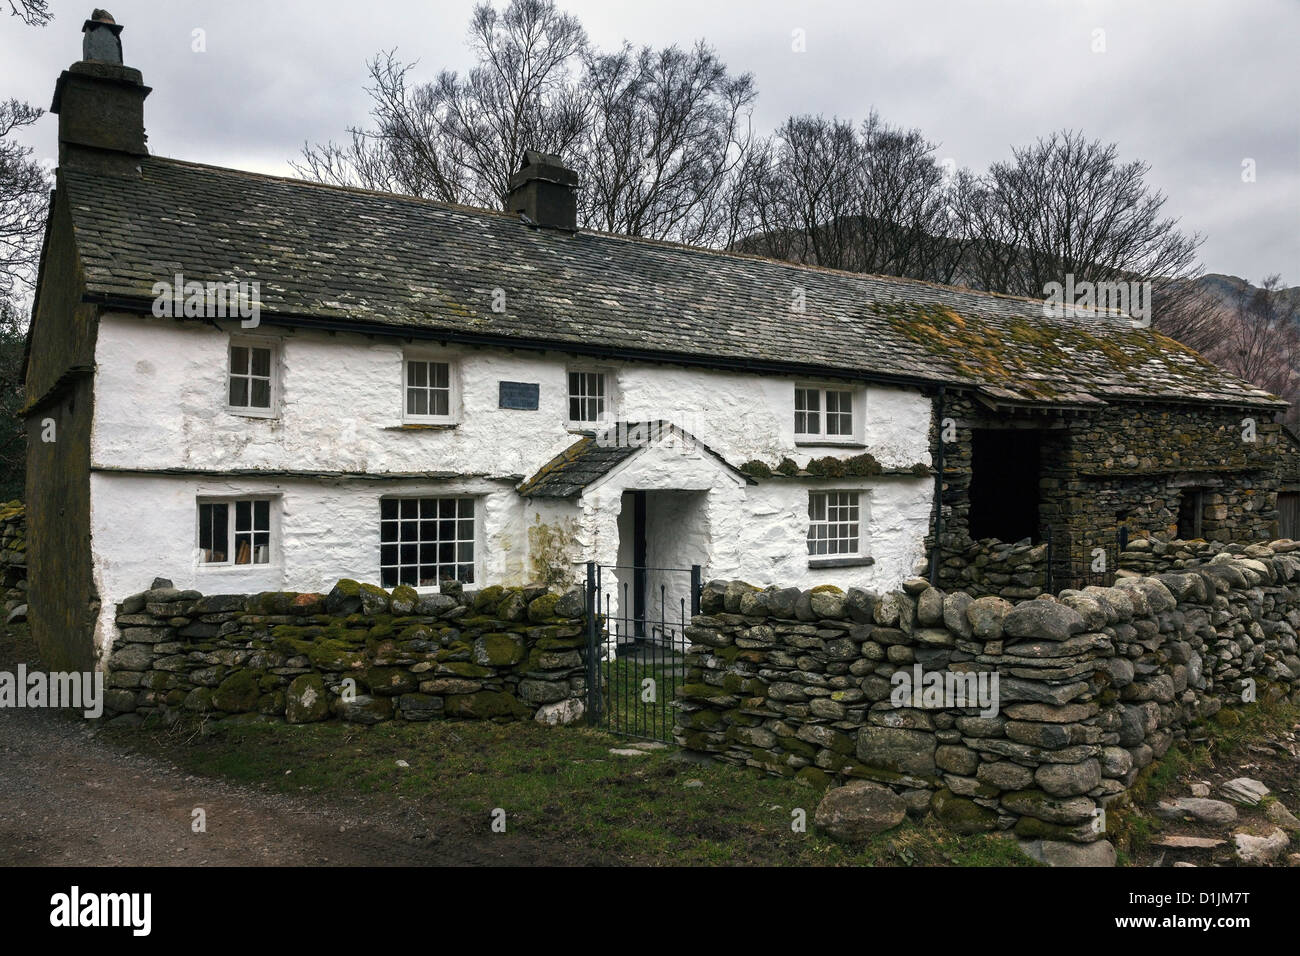 Ancienne ferme en gîte, blanches avec un toit en ardoise et grange attenante, Bridge End Cottage Farm,Little Langdale, Cumbria, England, UK Banque D'Images